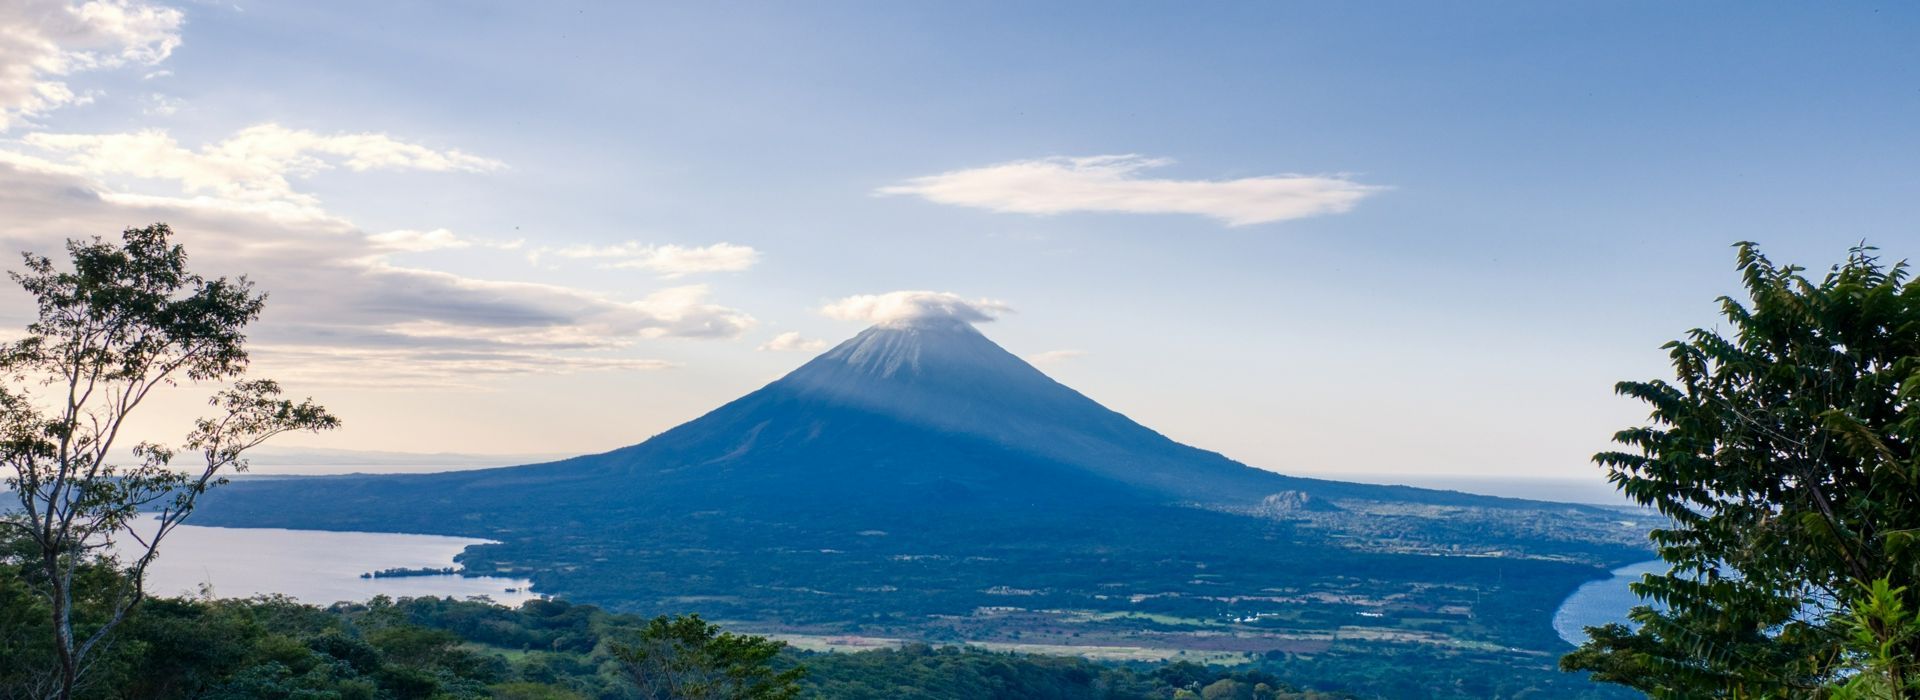 Nicaragua volcano landscape pixabay Lukas Jancicka.jpg